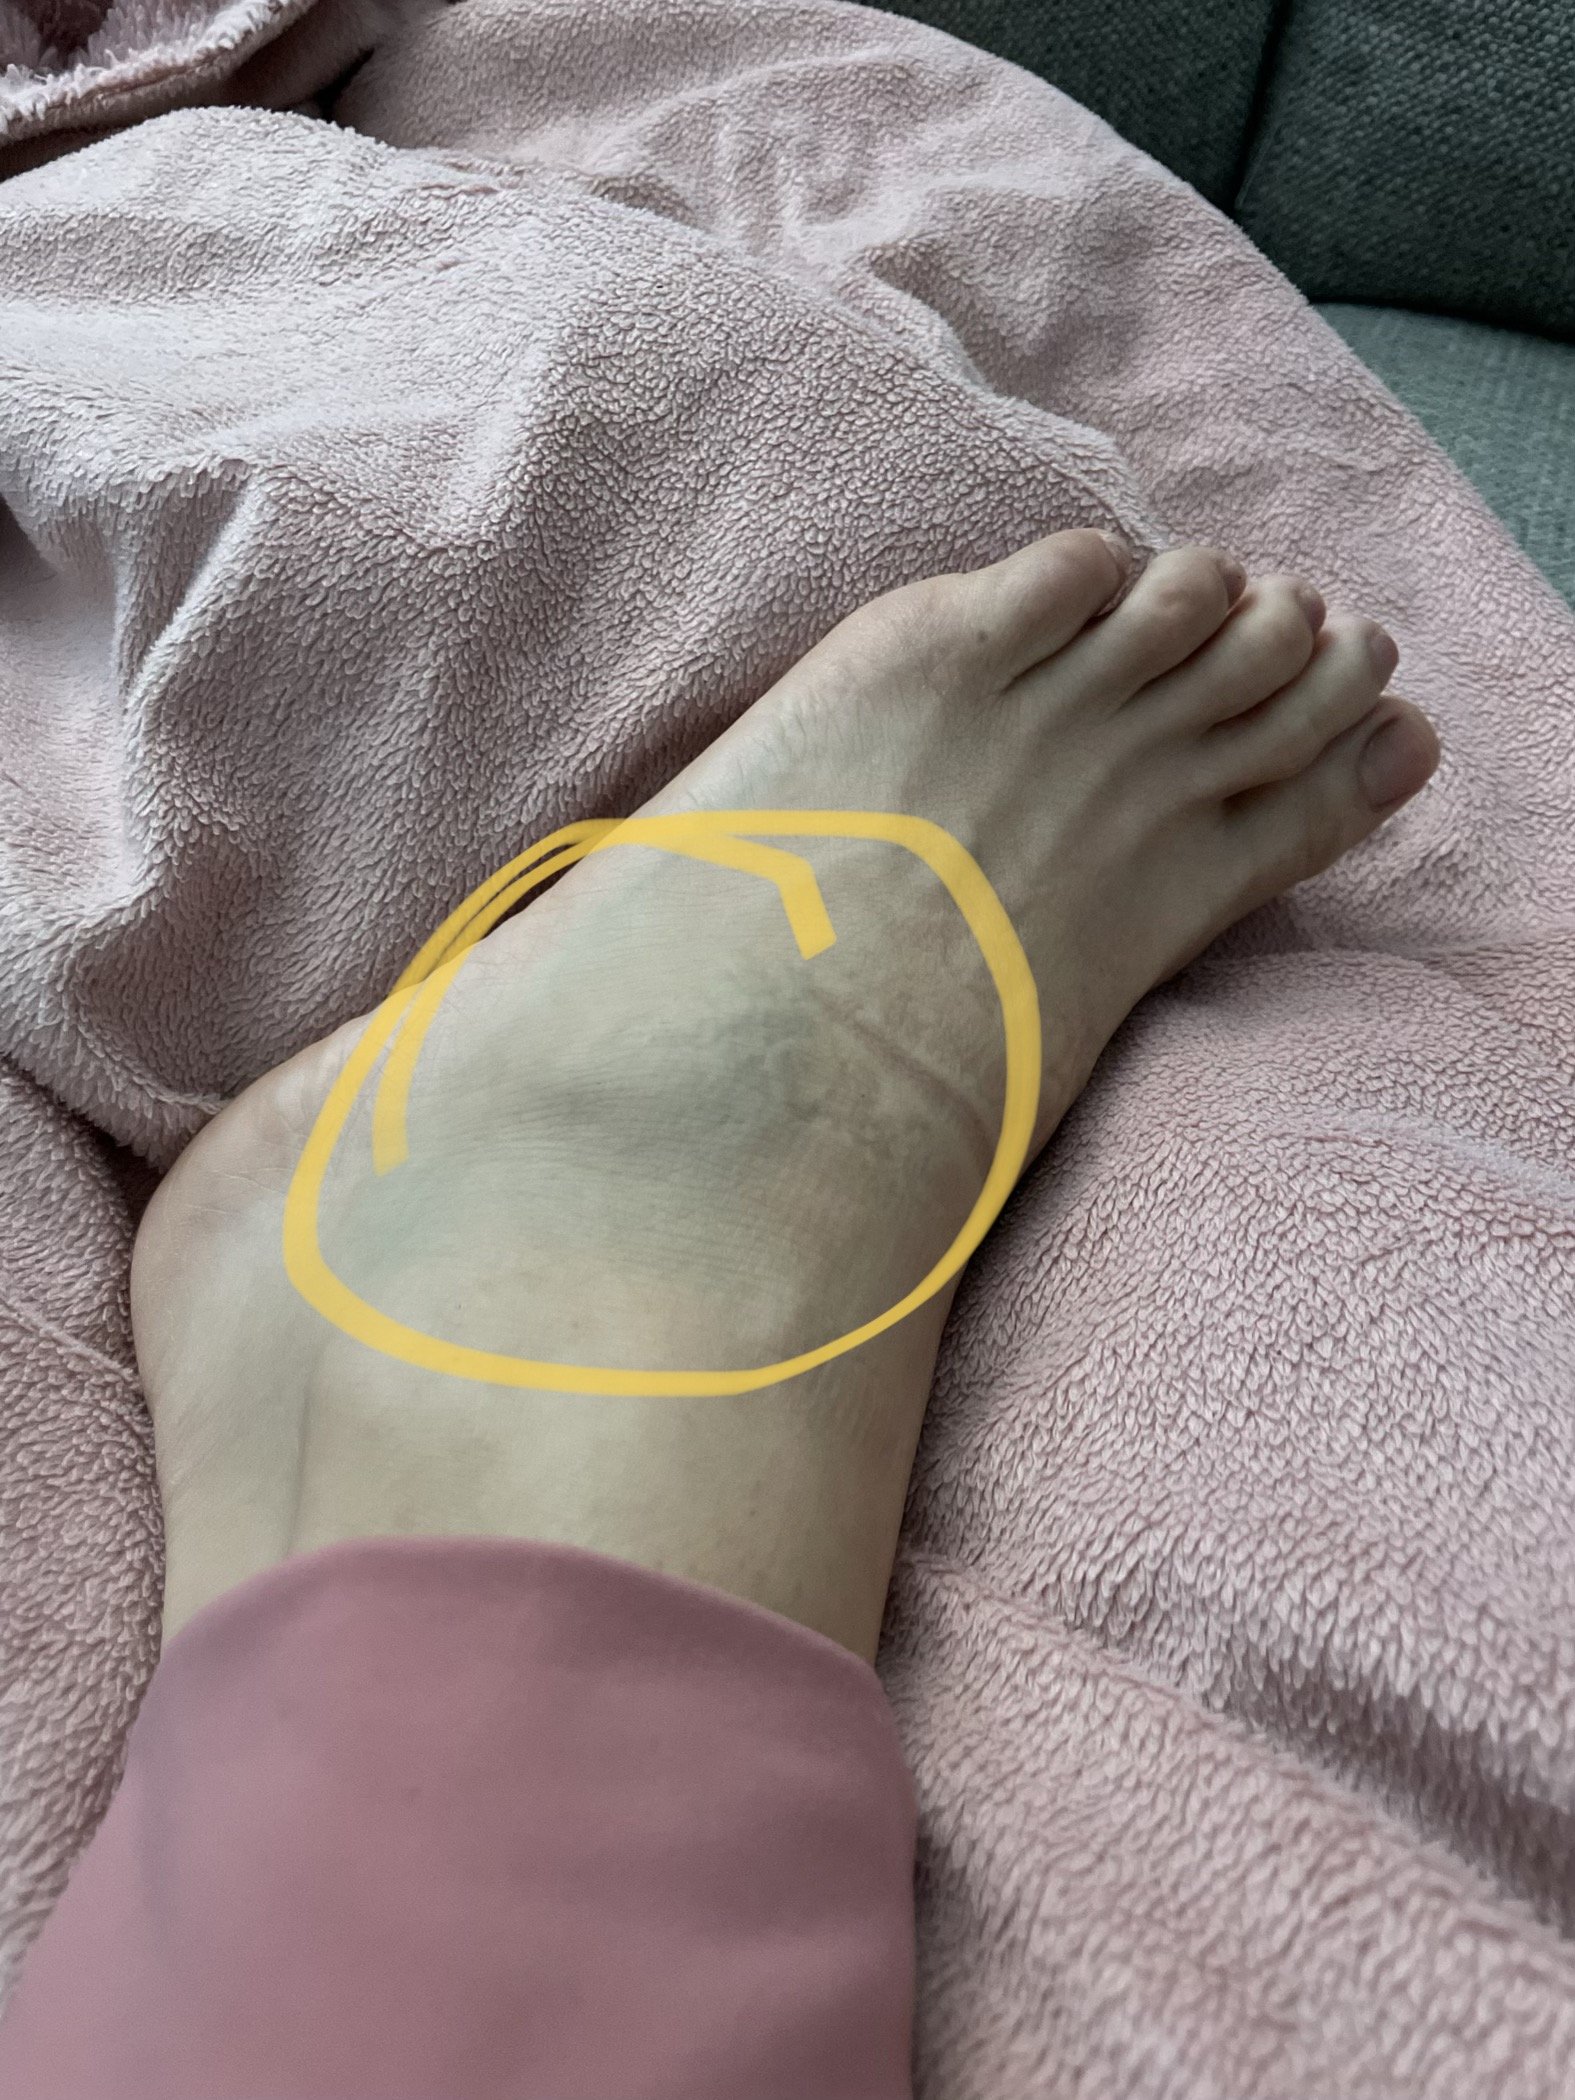 Day 1 - Swollen Foot